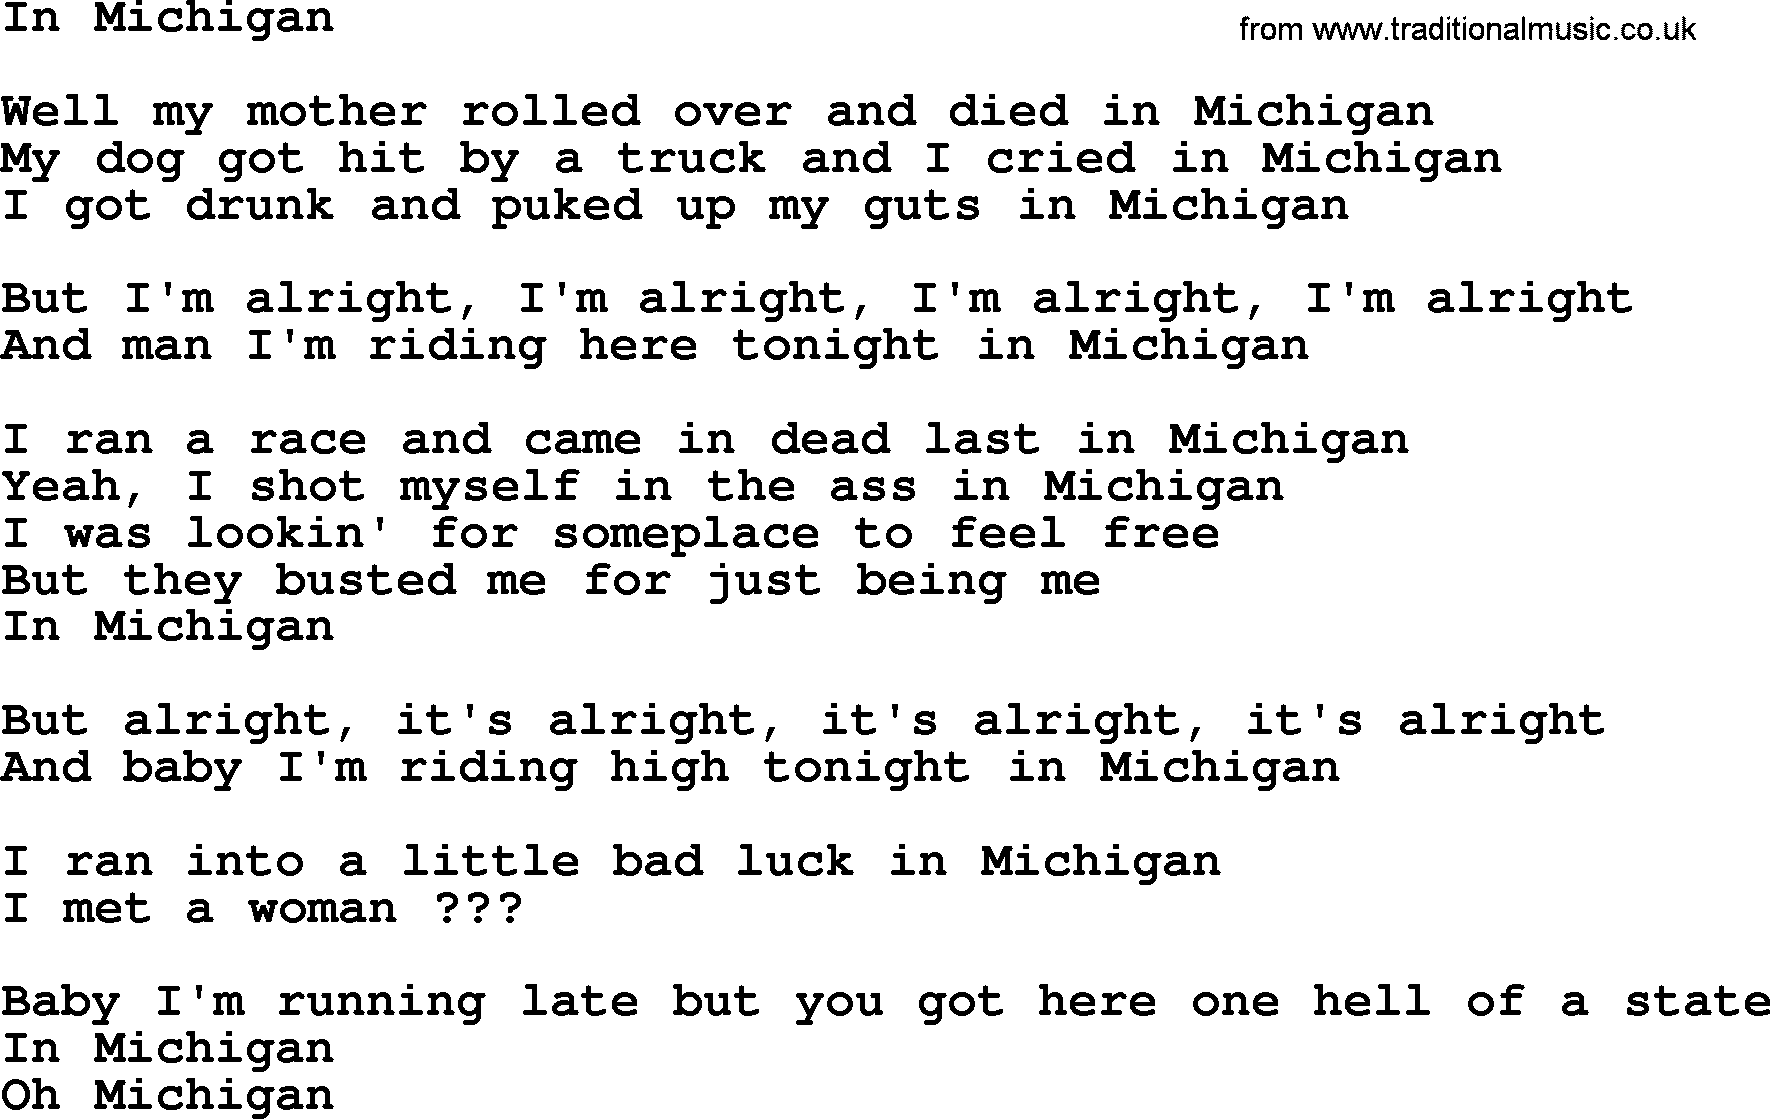 Bruce Springsteen song: In Michigan lyrics